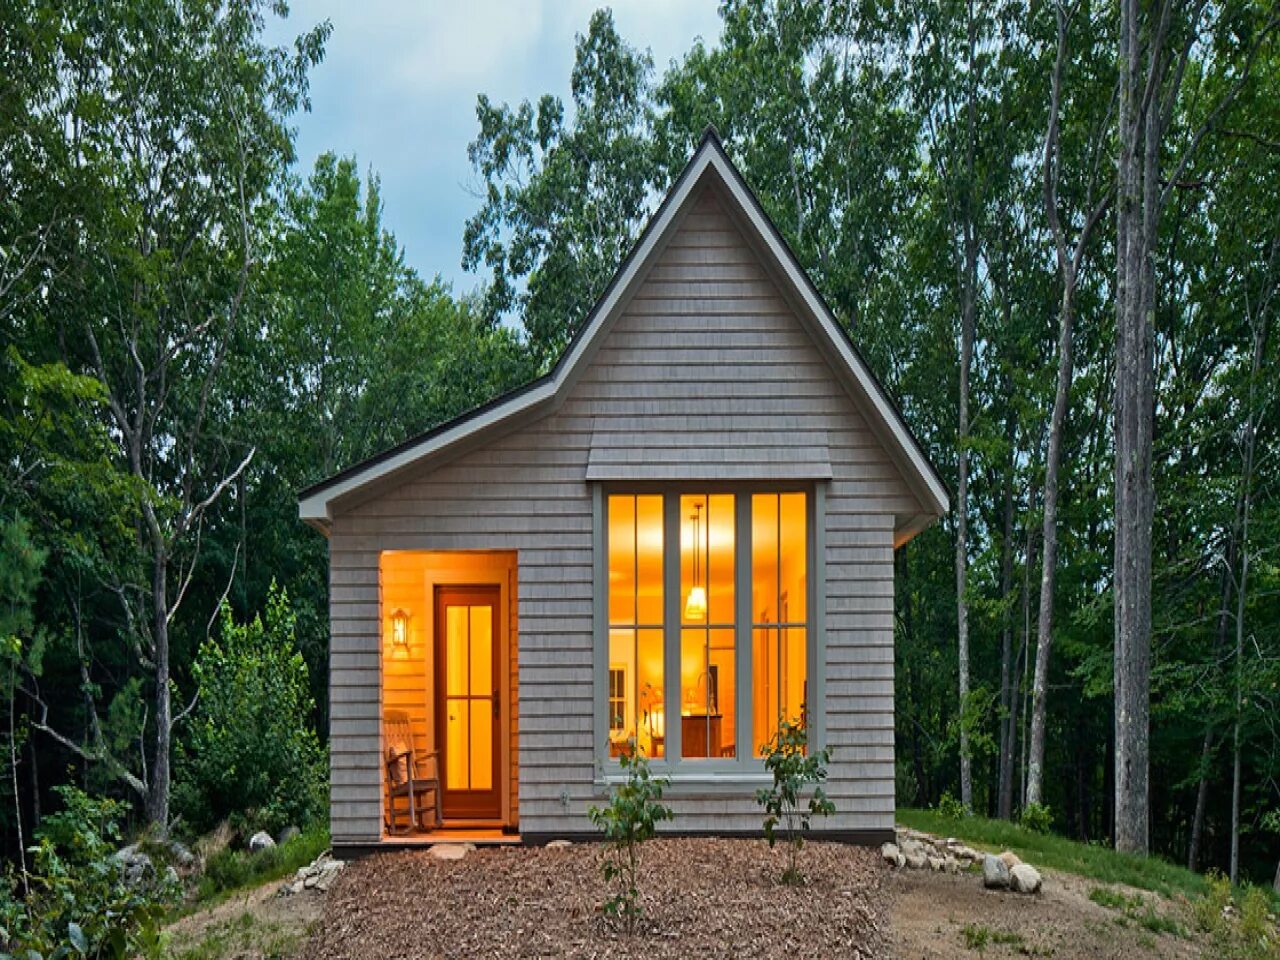 Тини Хаус Матриярви проект. Шведский минидом. Тини Хаус 30 кв. Проект tiny House односкатный. Легкая загородная